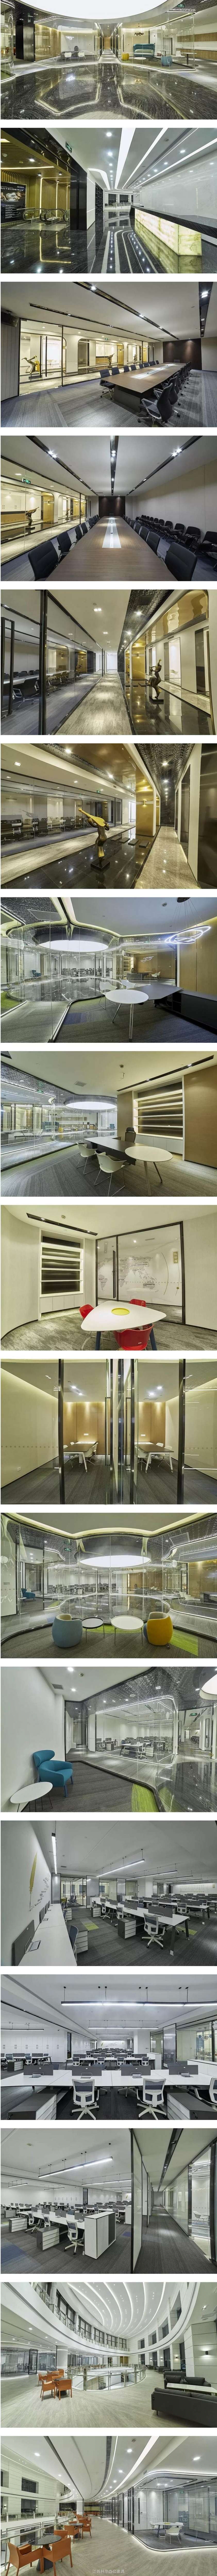 上海TS集团玻璃装饰与现代办公家具的搭